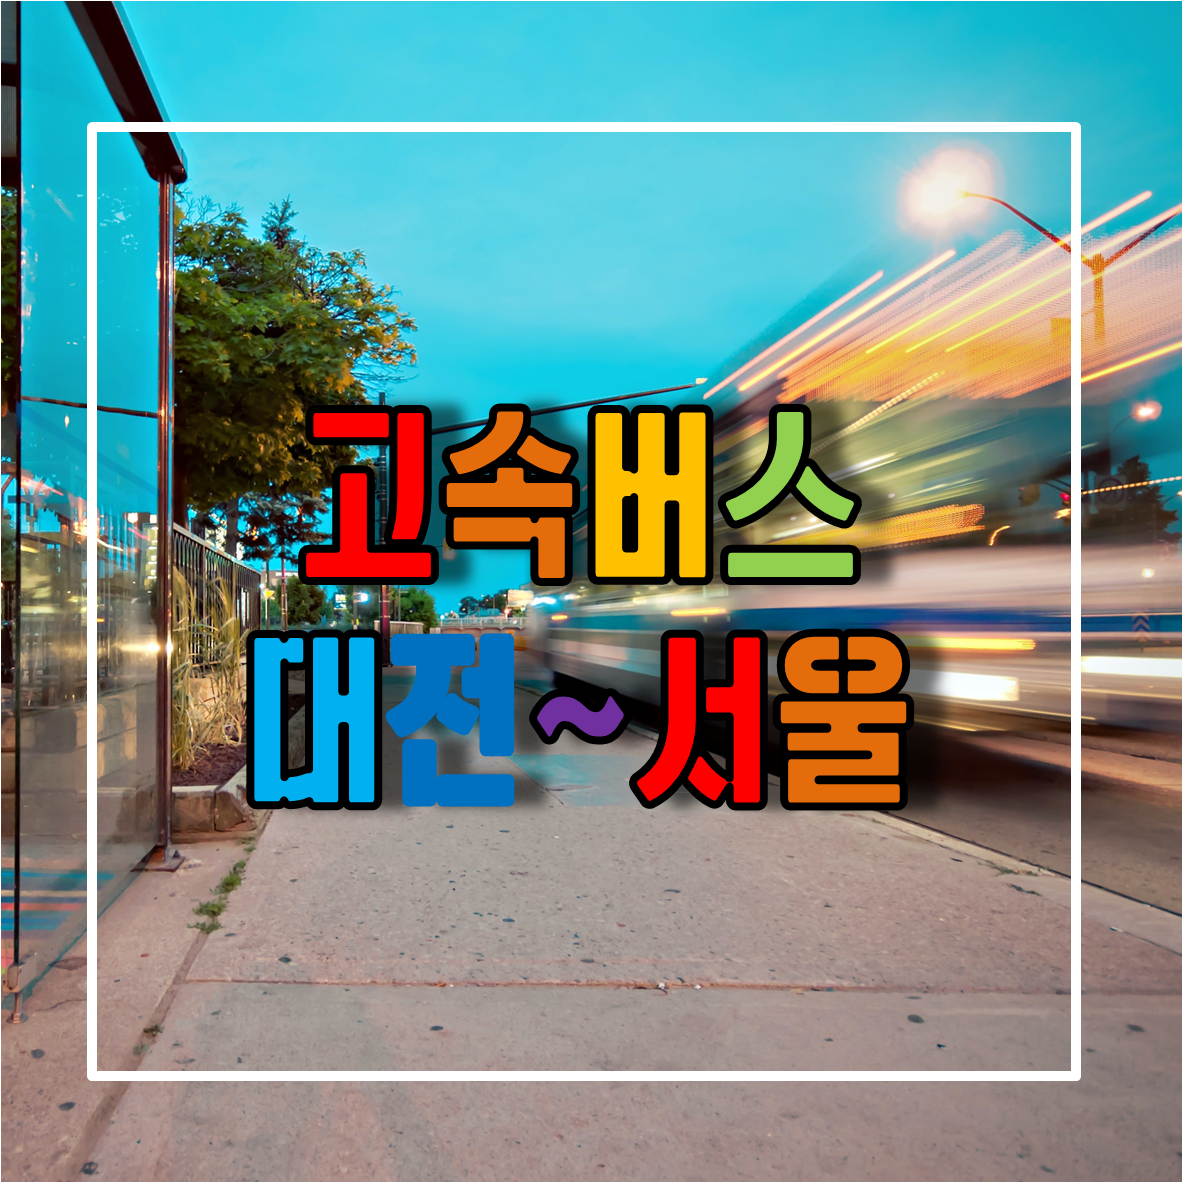 대전에서 서울가는 고속버스 시간표